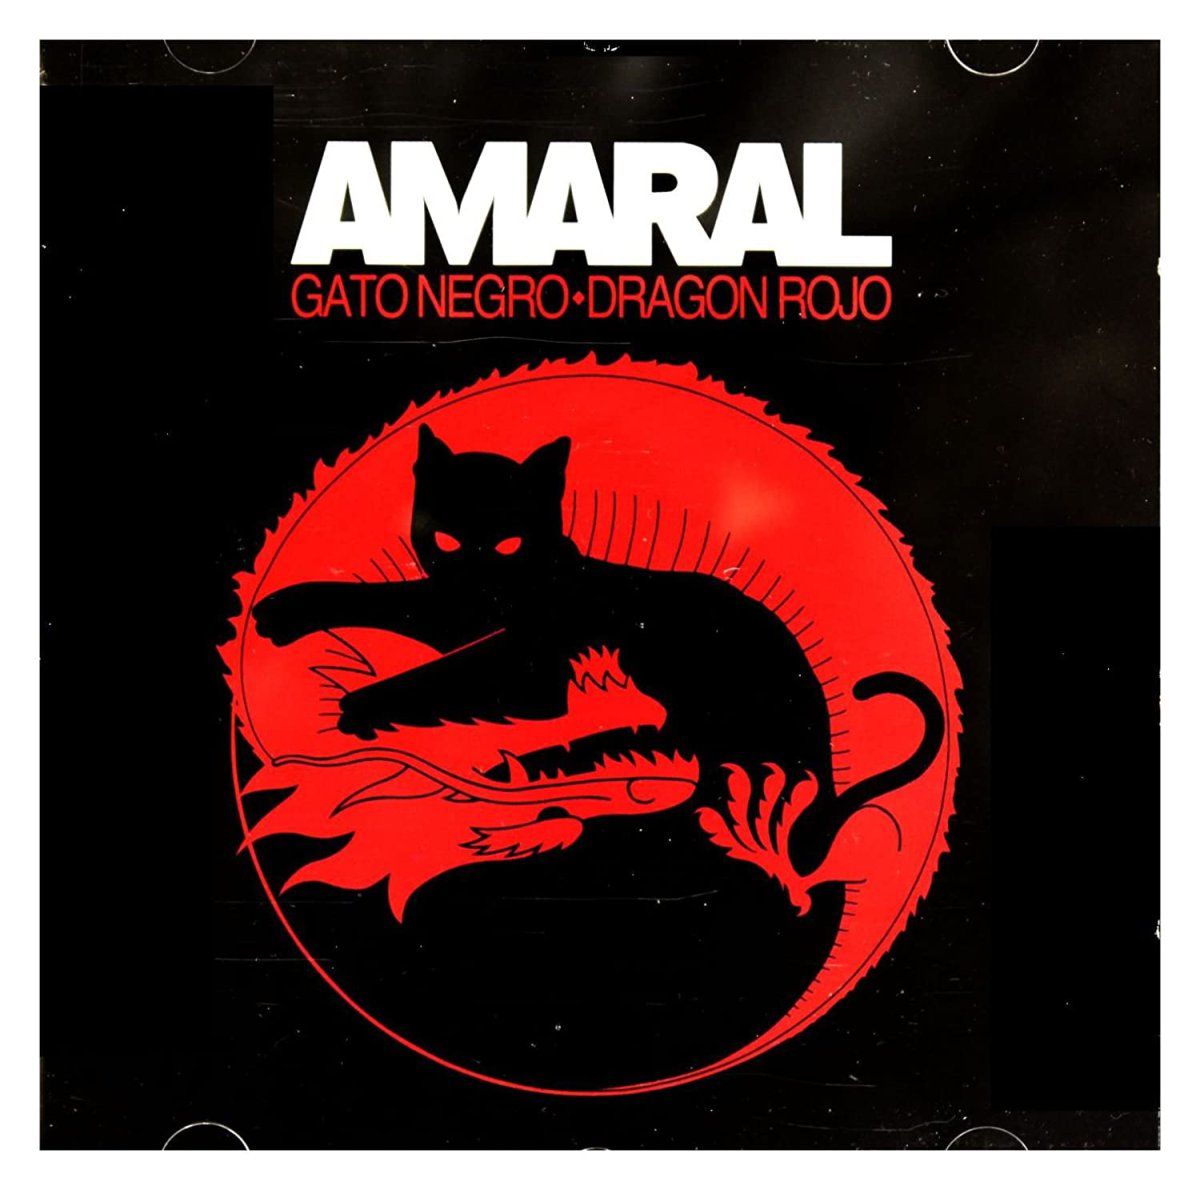 Amaral - 'Gato negro, Dragón rojo' (27 de mayo 2008)